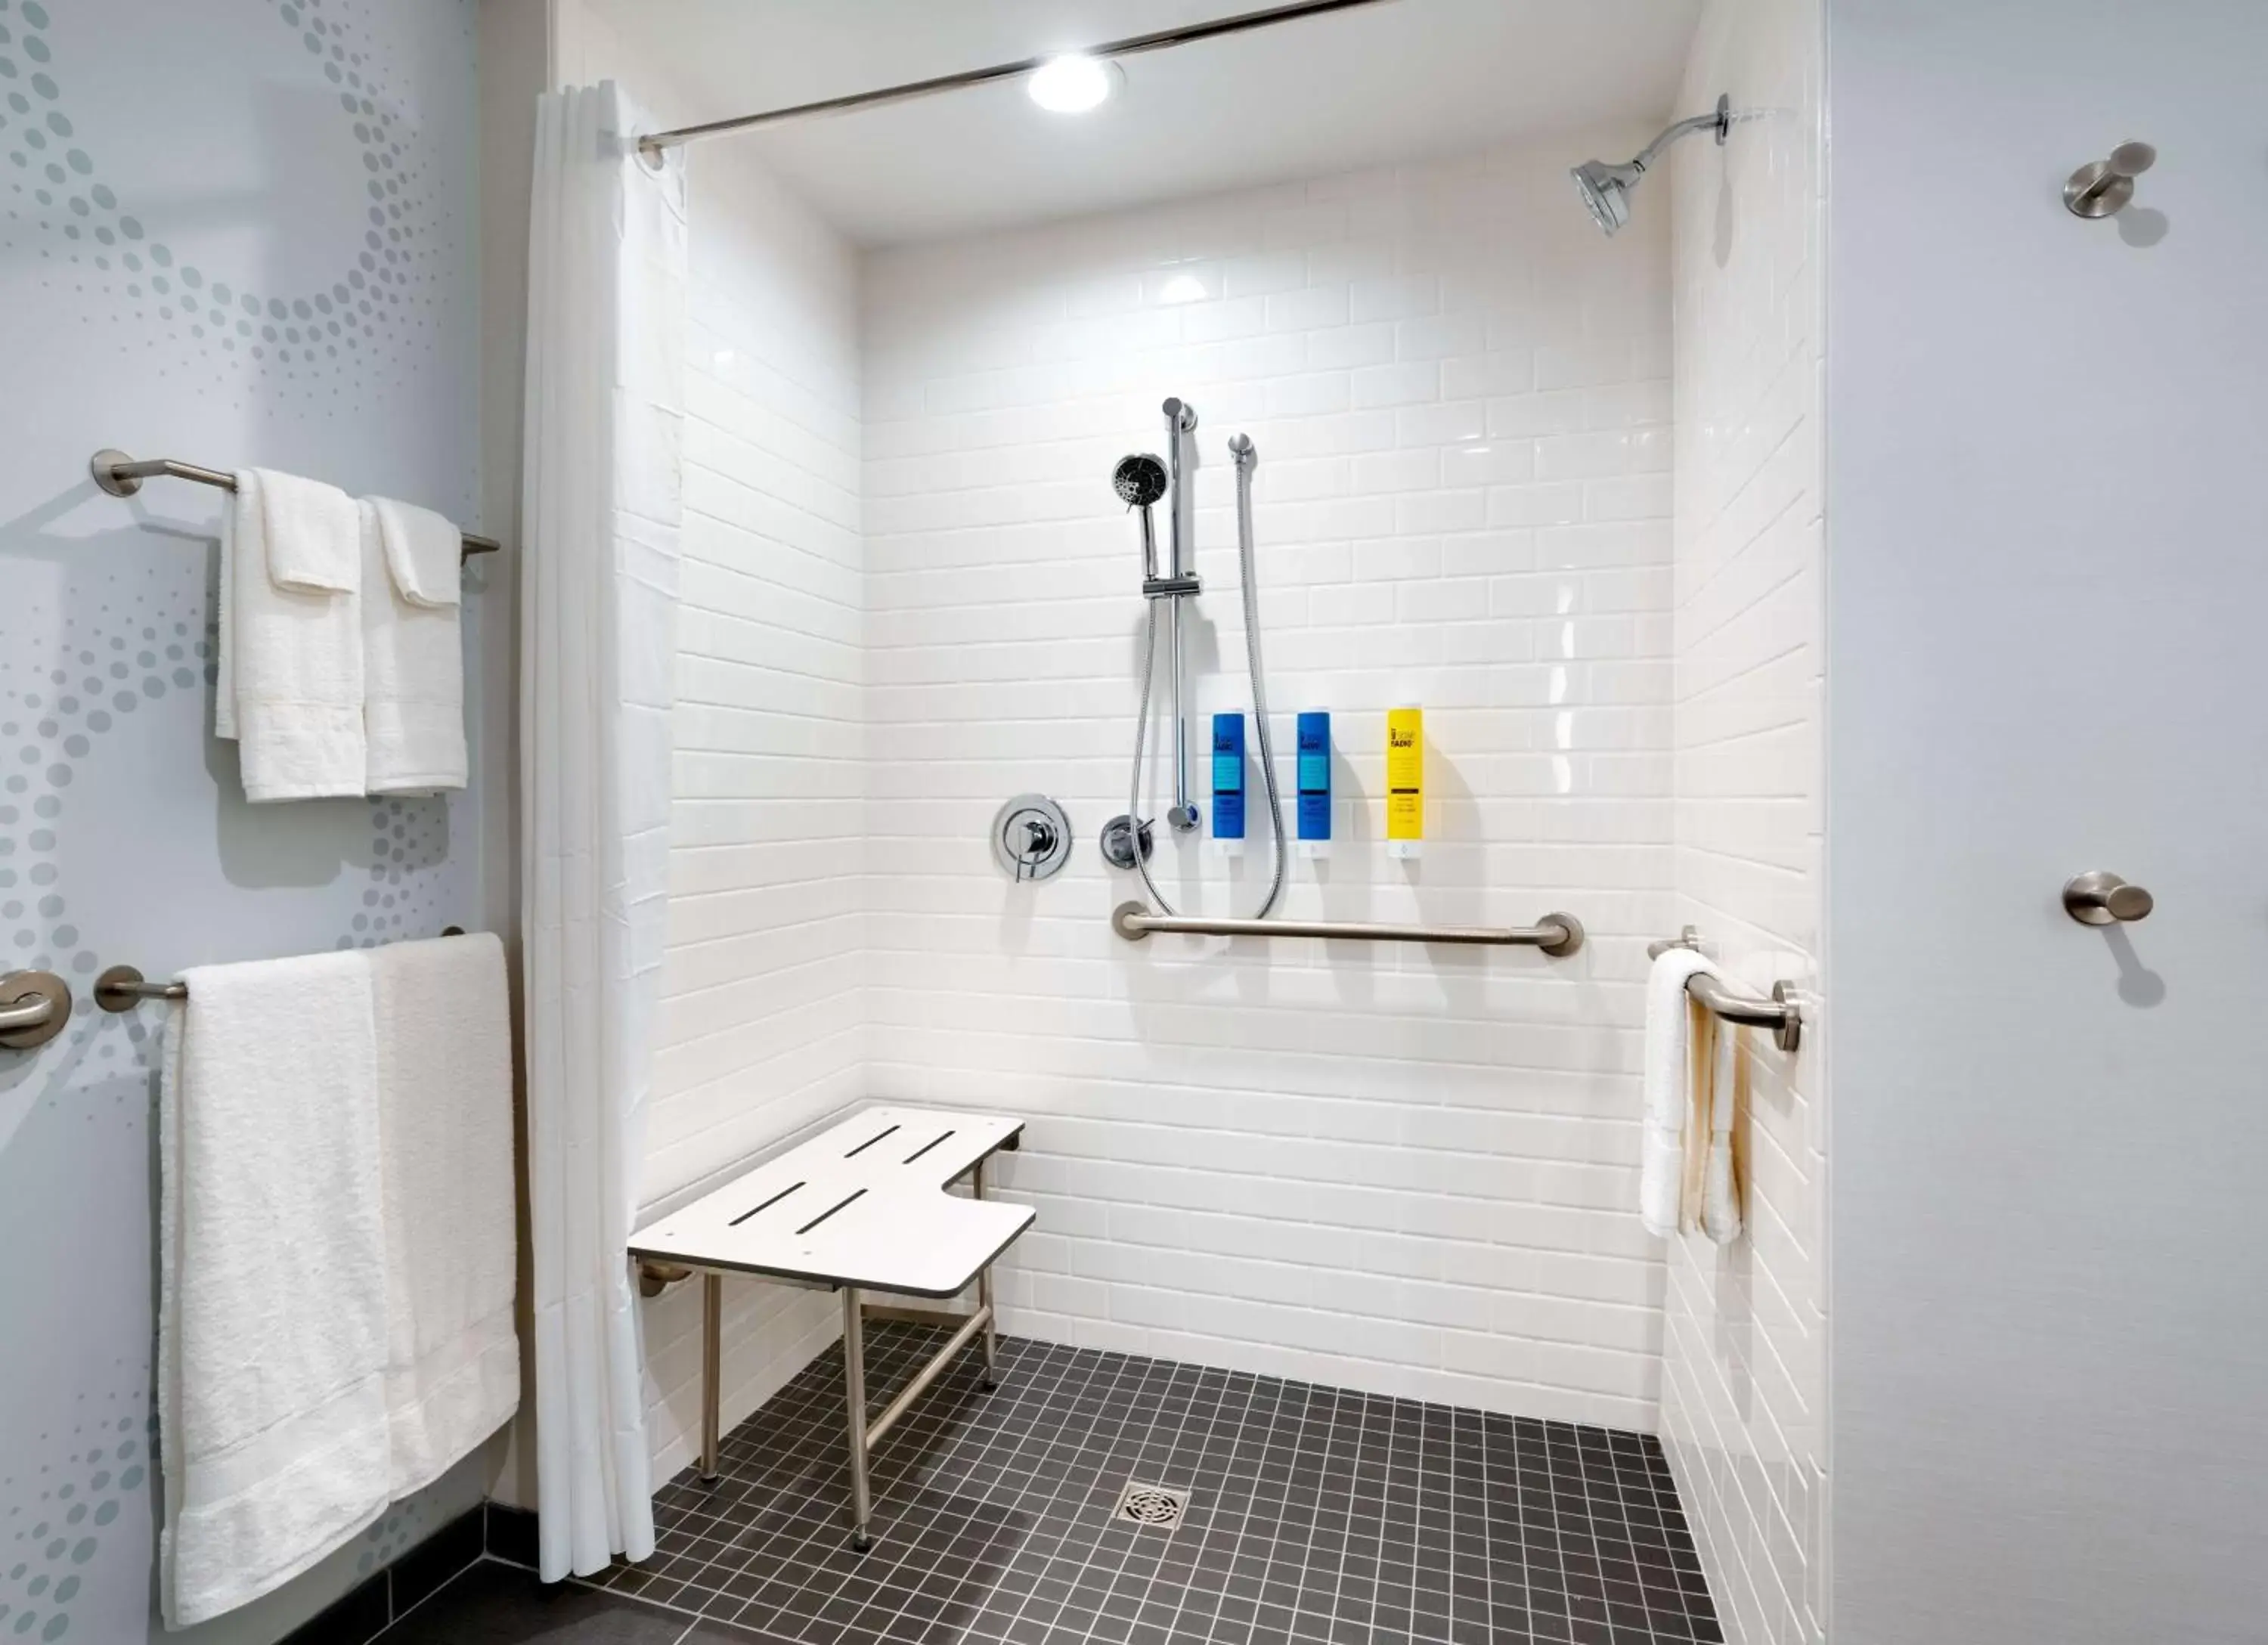 Bathroom in Tru By Hilton Lehi, Ut